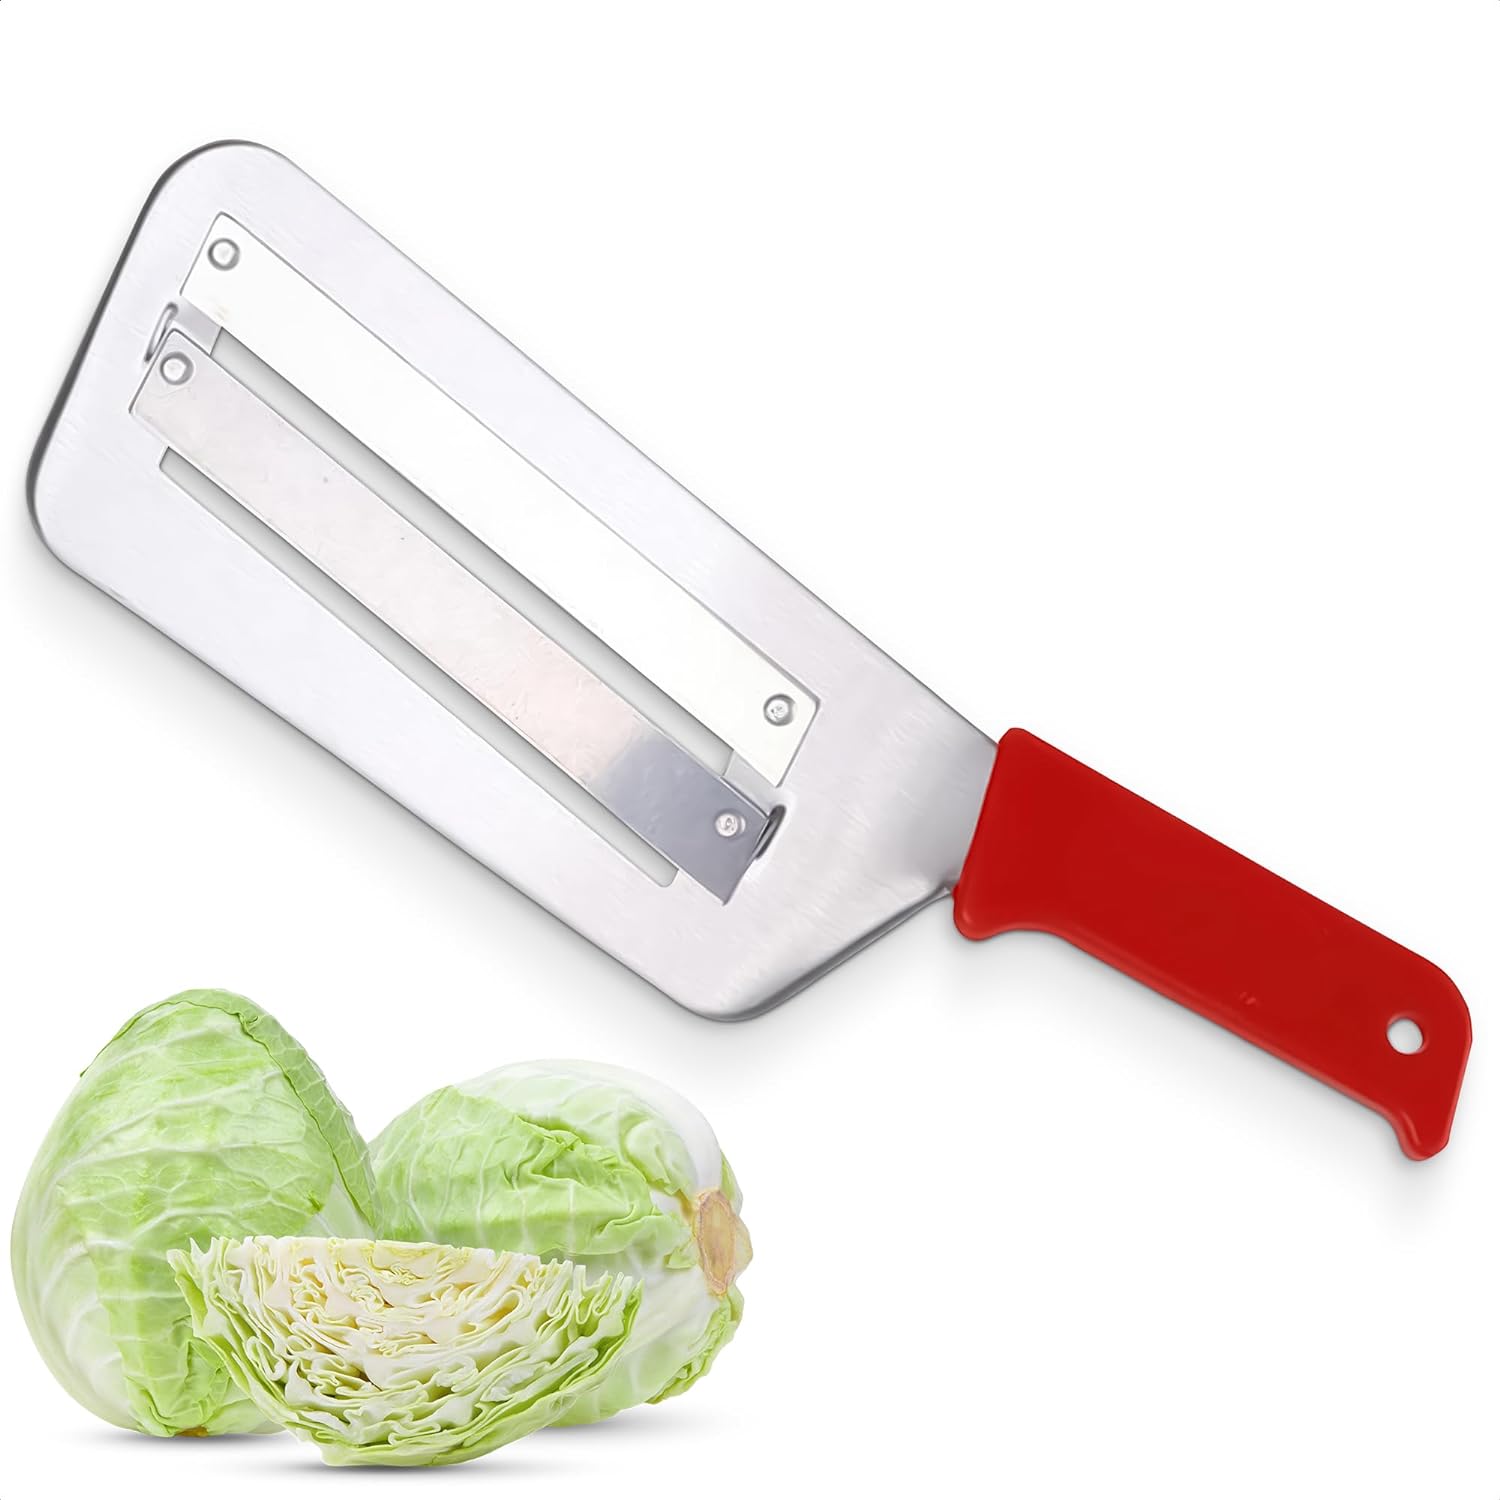 SkyShopy Cabbage Shredder Kitchen Grater Slicer - Stainless Steel Shredder Knife Fruit Chopper